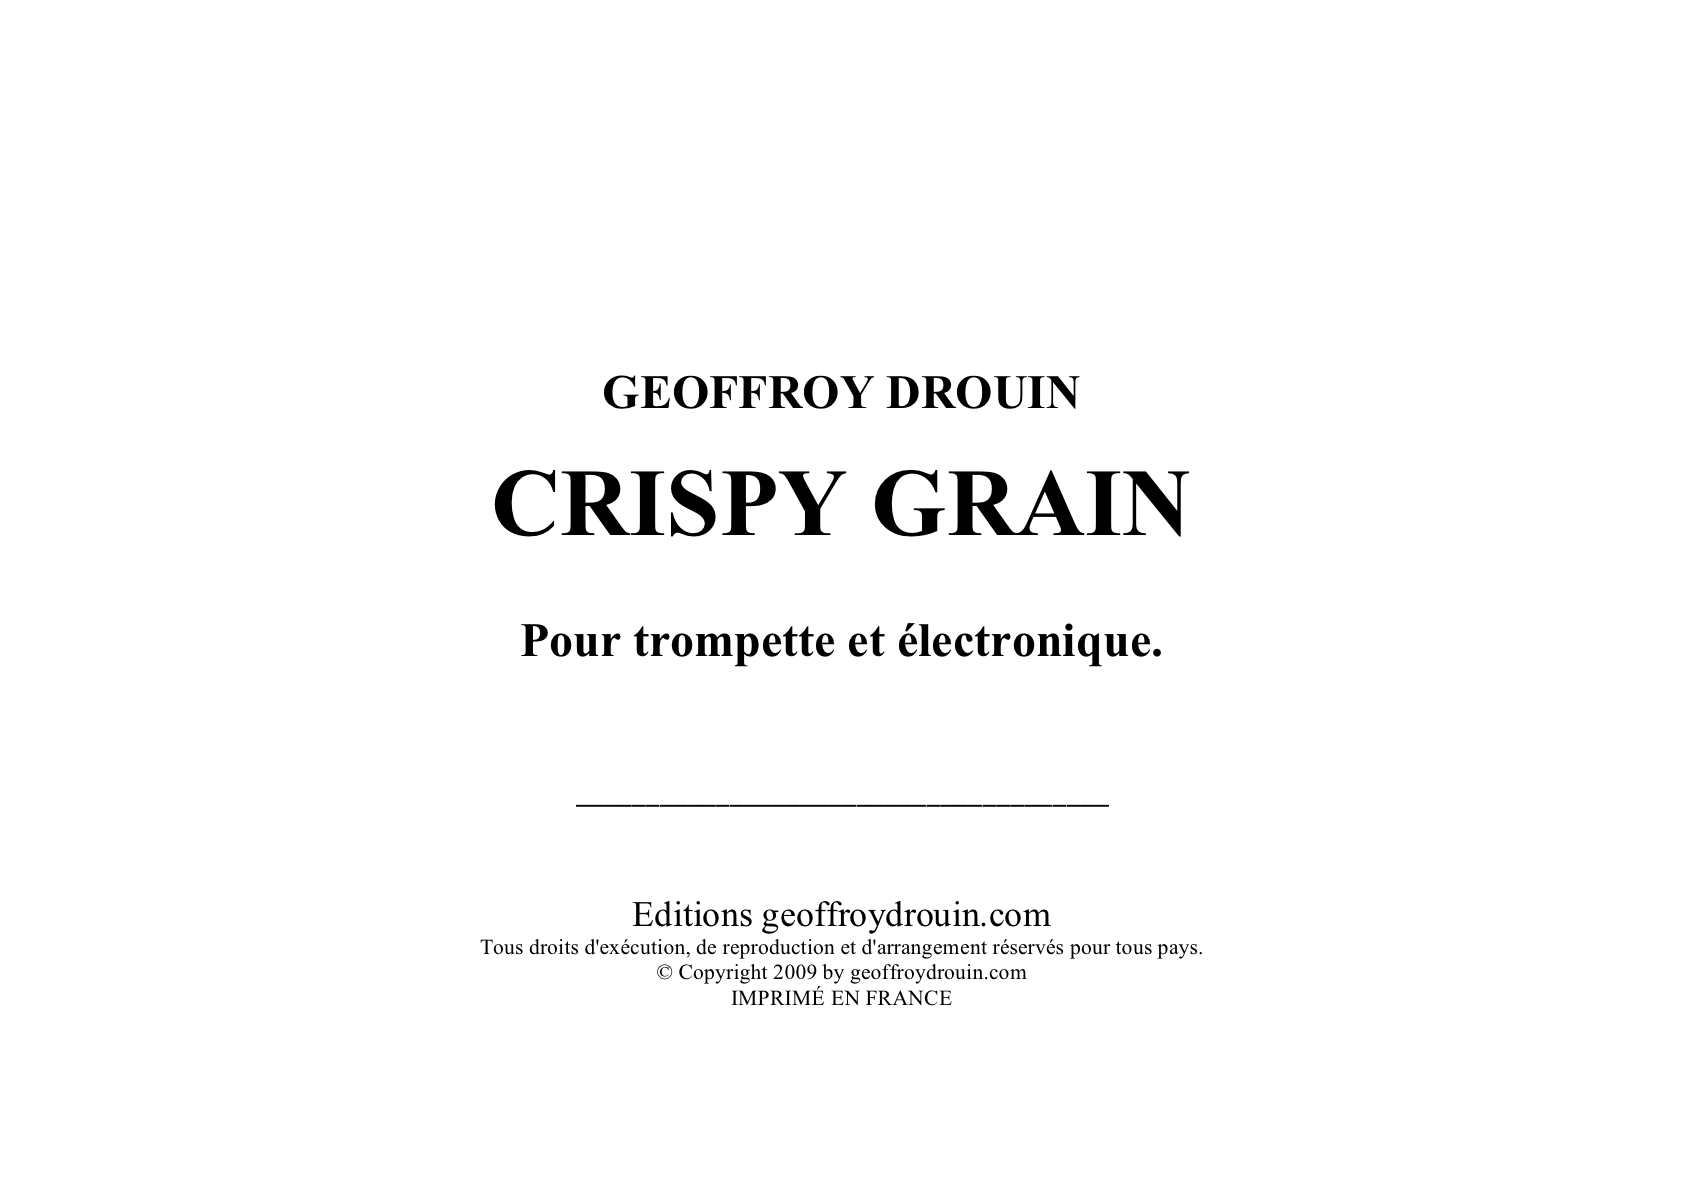 Crispy grain